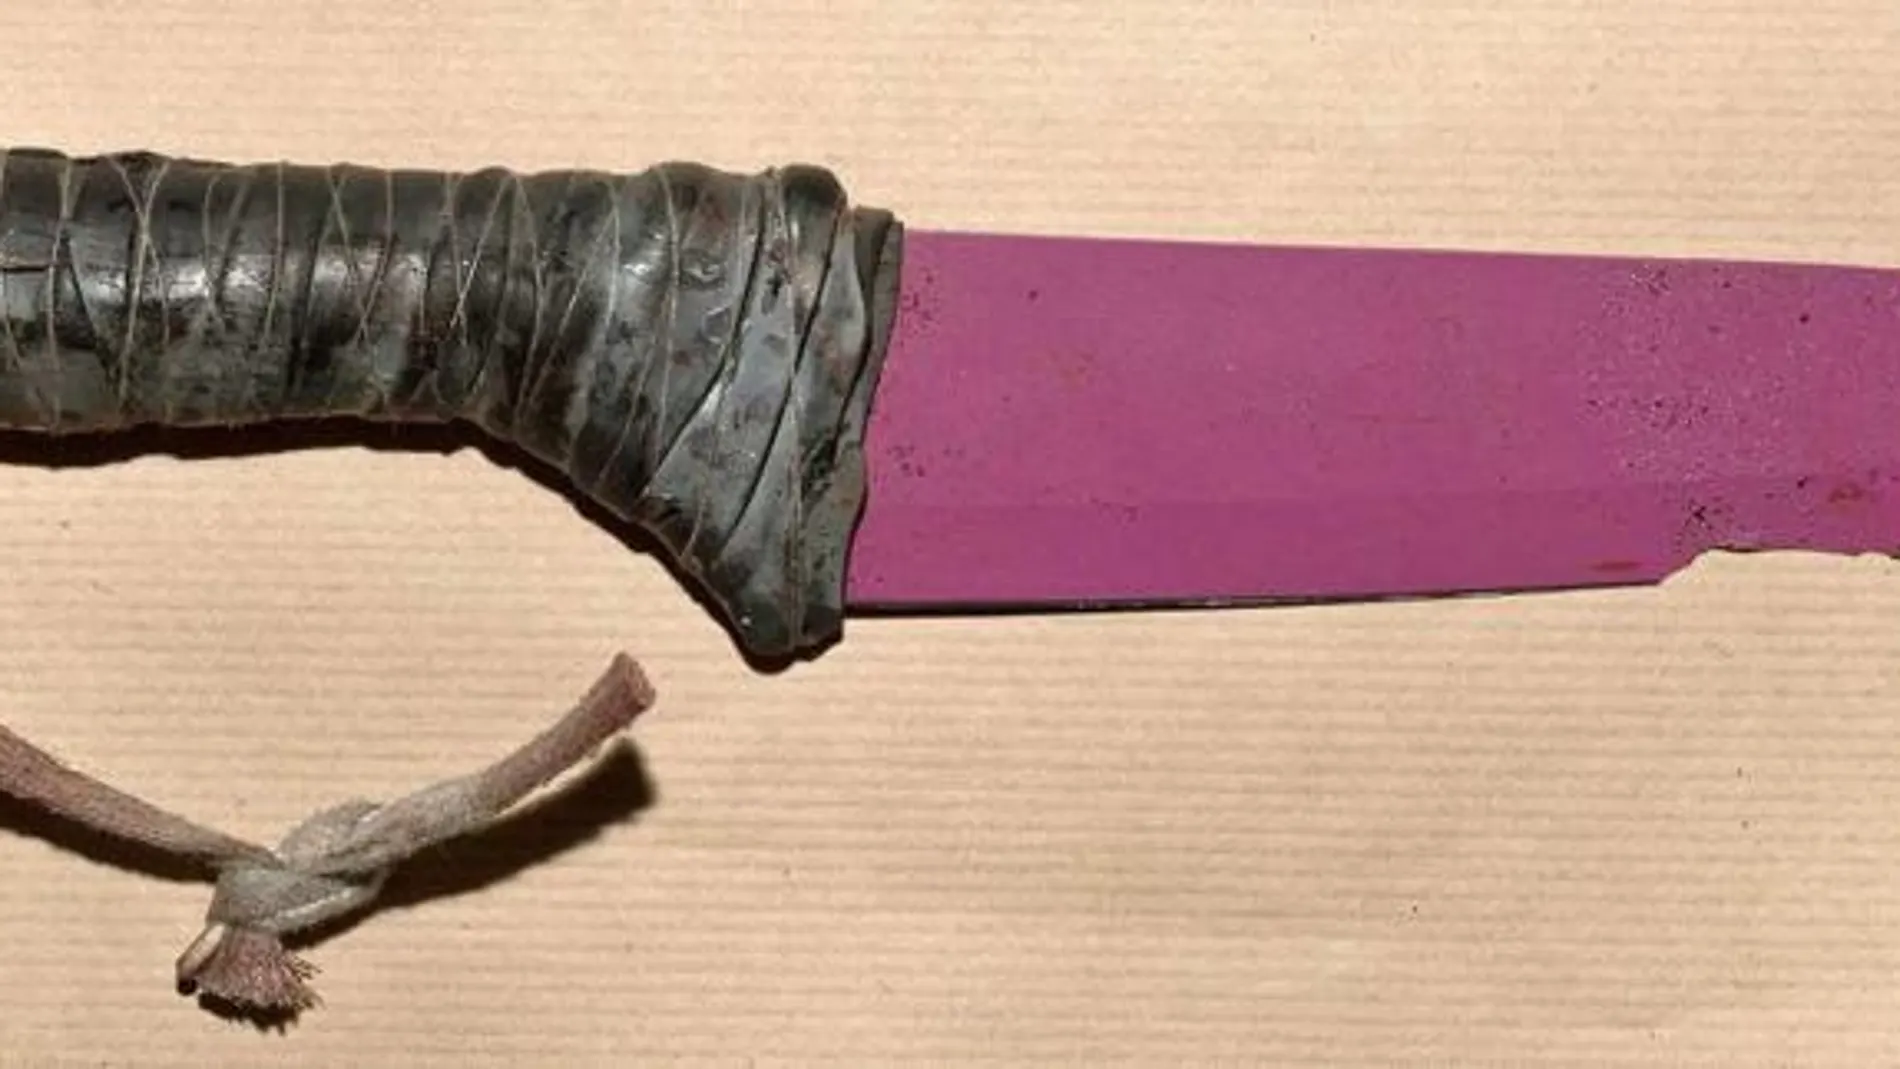 Los agresores llevaban un cuchillo de cerámica de color rosa con una hoja de 30 centímetros de longitud y una banda de cuero en la empuñadura